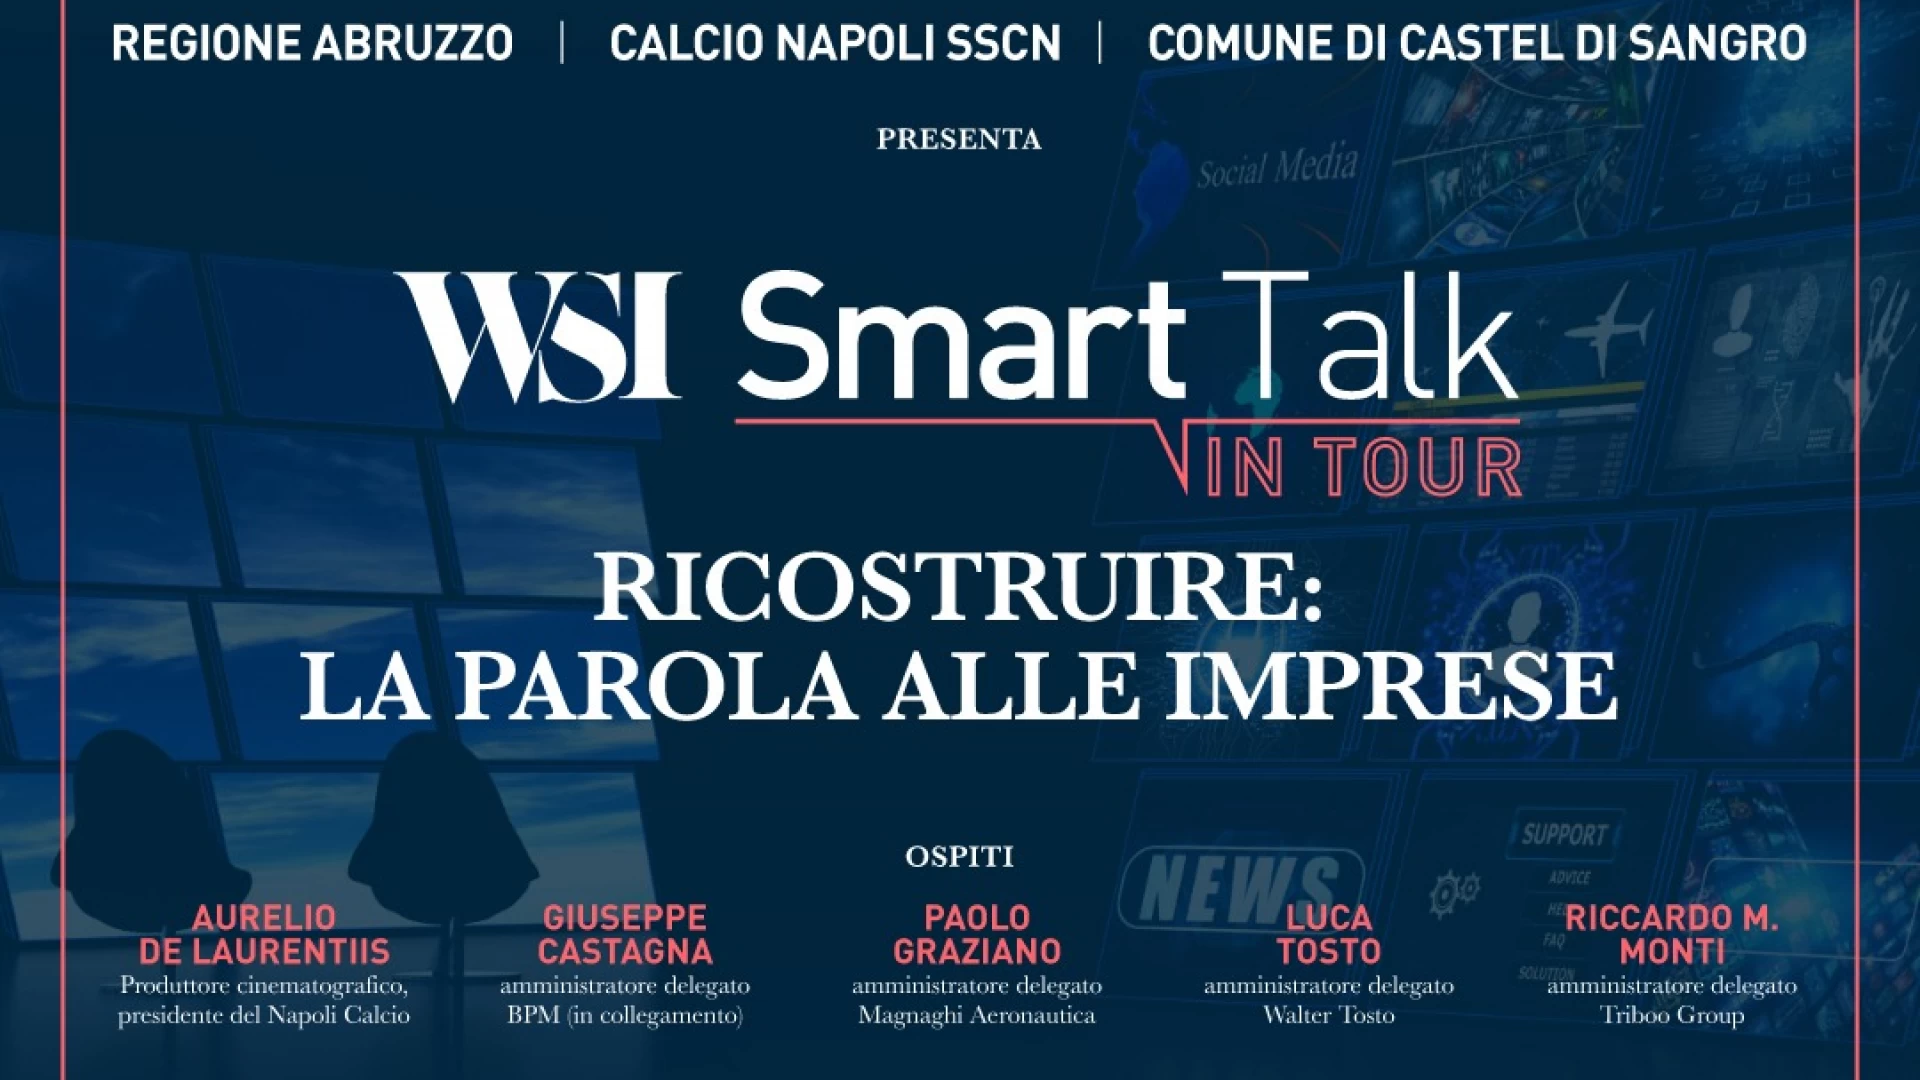 Ritiro Napoli a Castel Di Sangro, domani alle 19.30 il workshop "Ricostruire, la parola alle imprese".